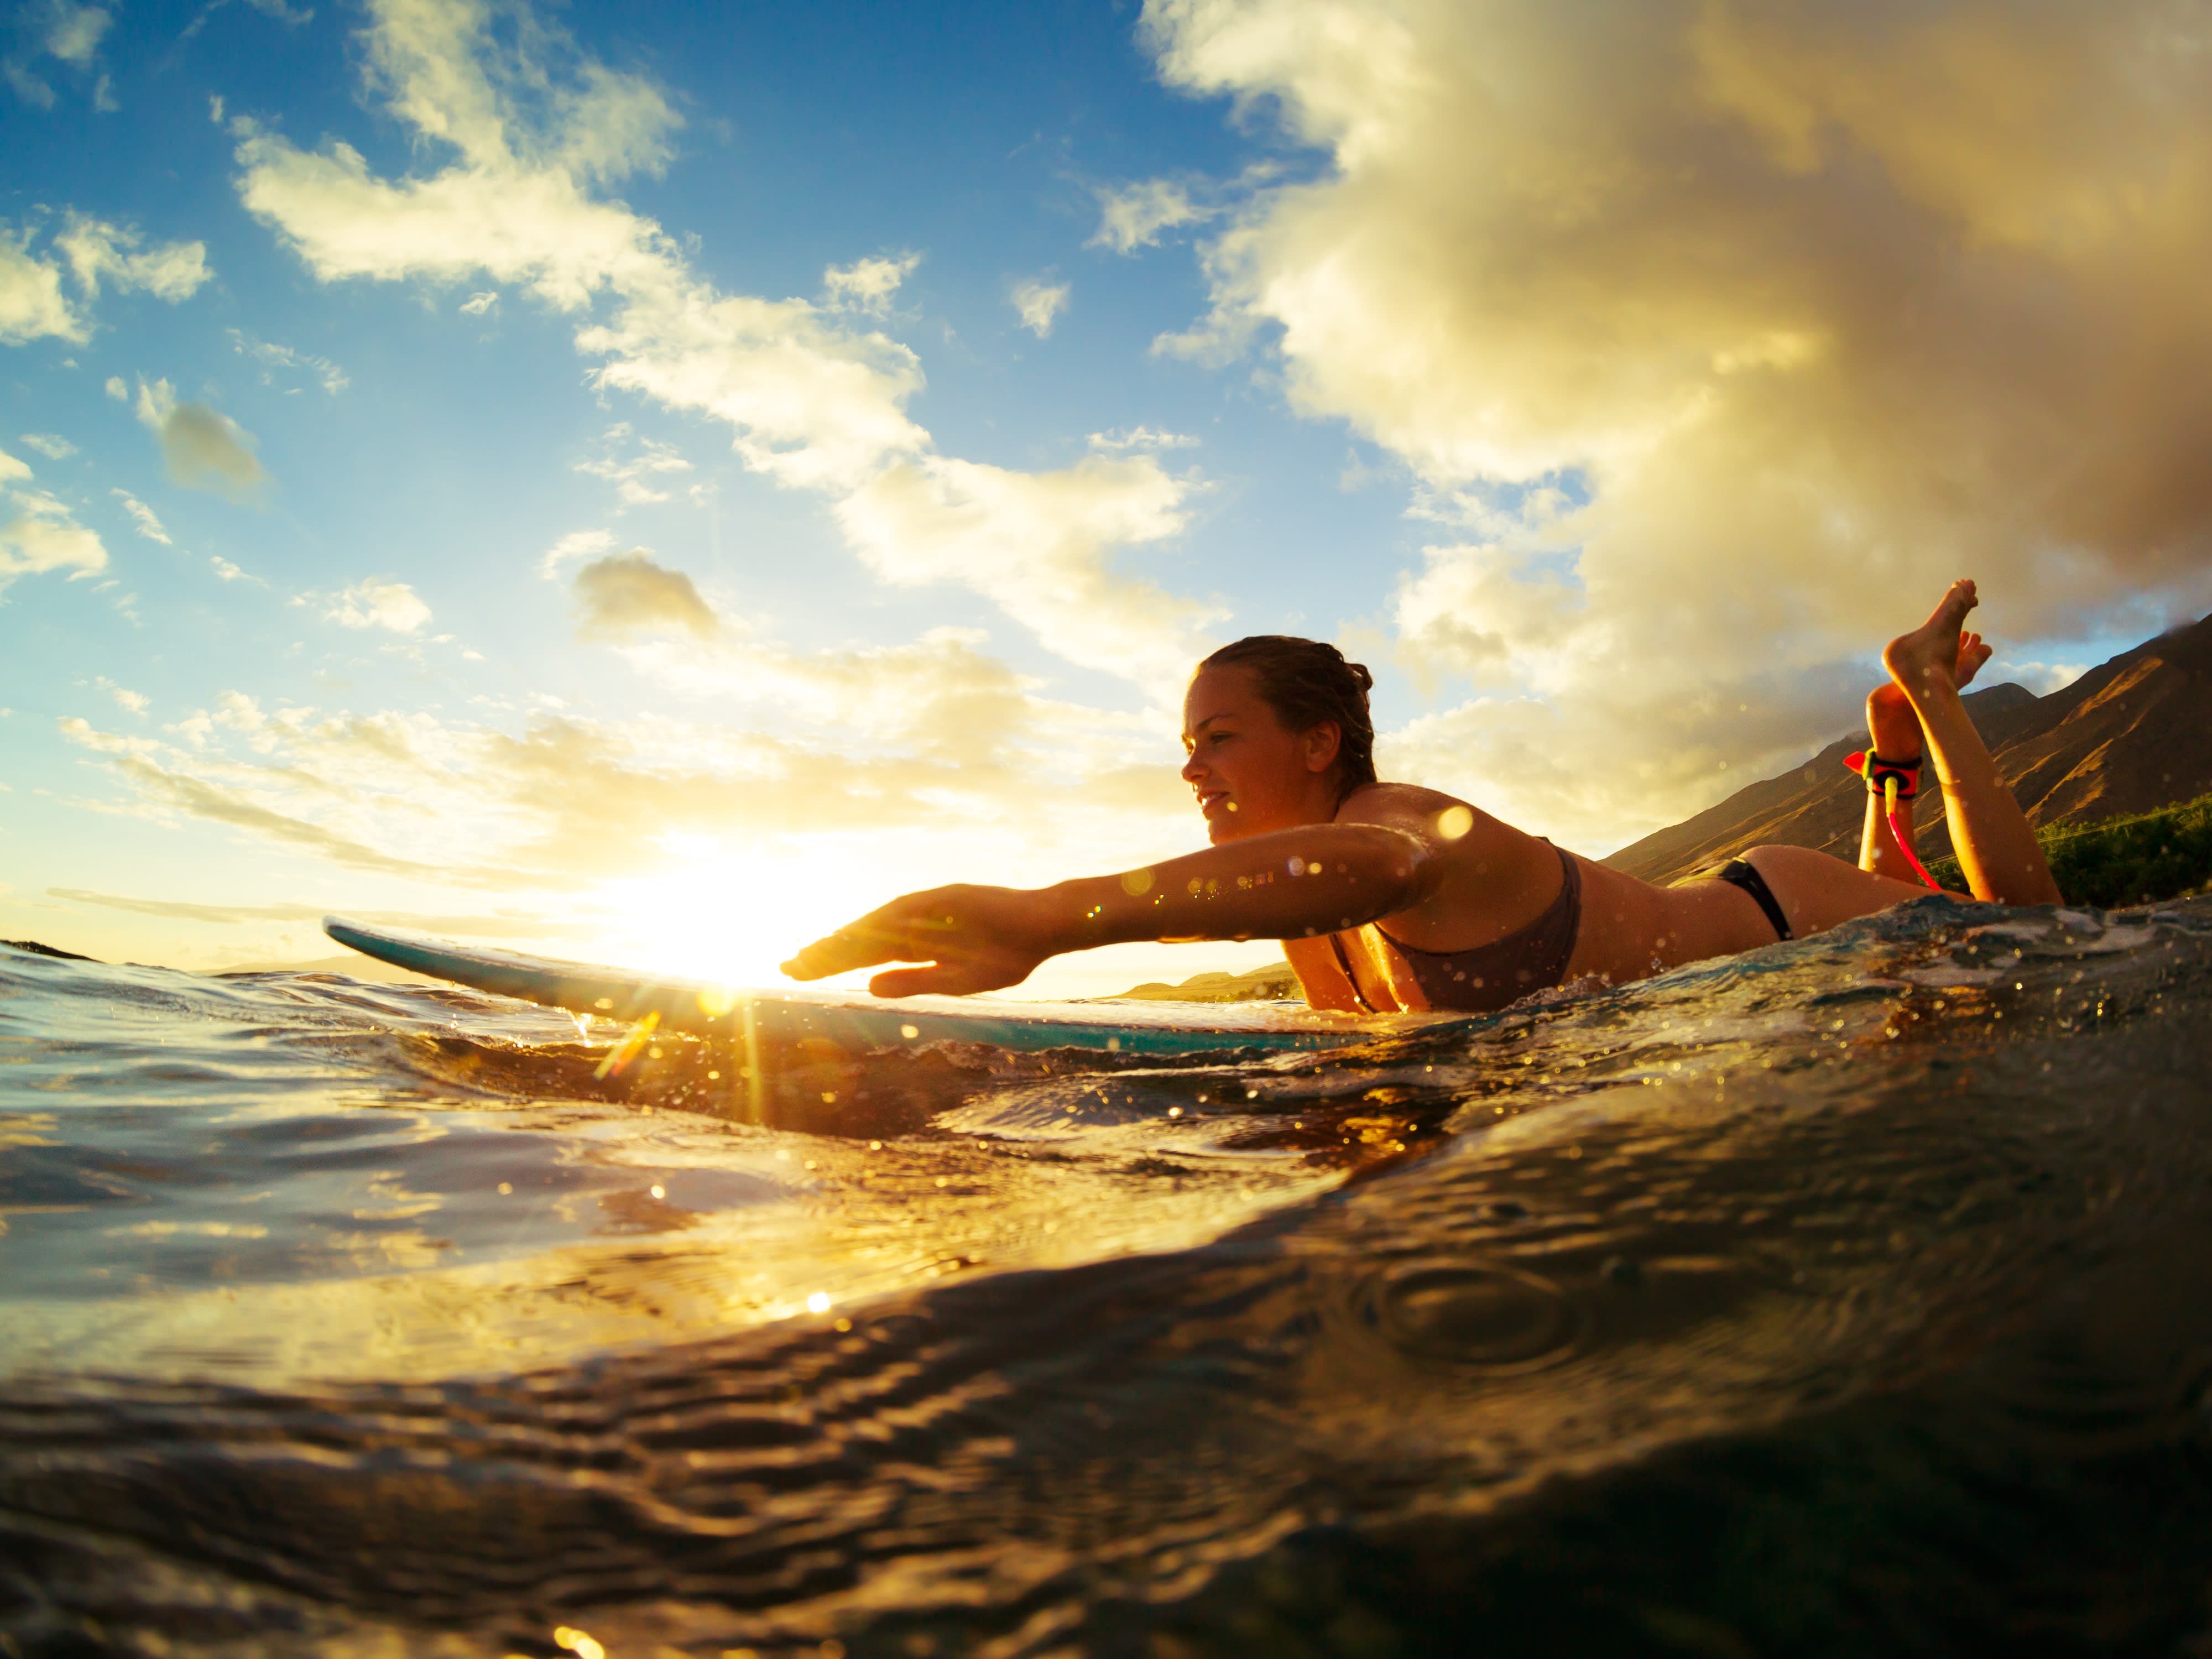 サーフィンレッスン 初心者 中級者向け 99 立てる キッズ 5歳 のサーフィンデビューもお任せください ホテル往復送迎付 日本語対応 バリ島の観光 オプショナルツアー専門 Veltra ベルトラ